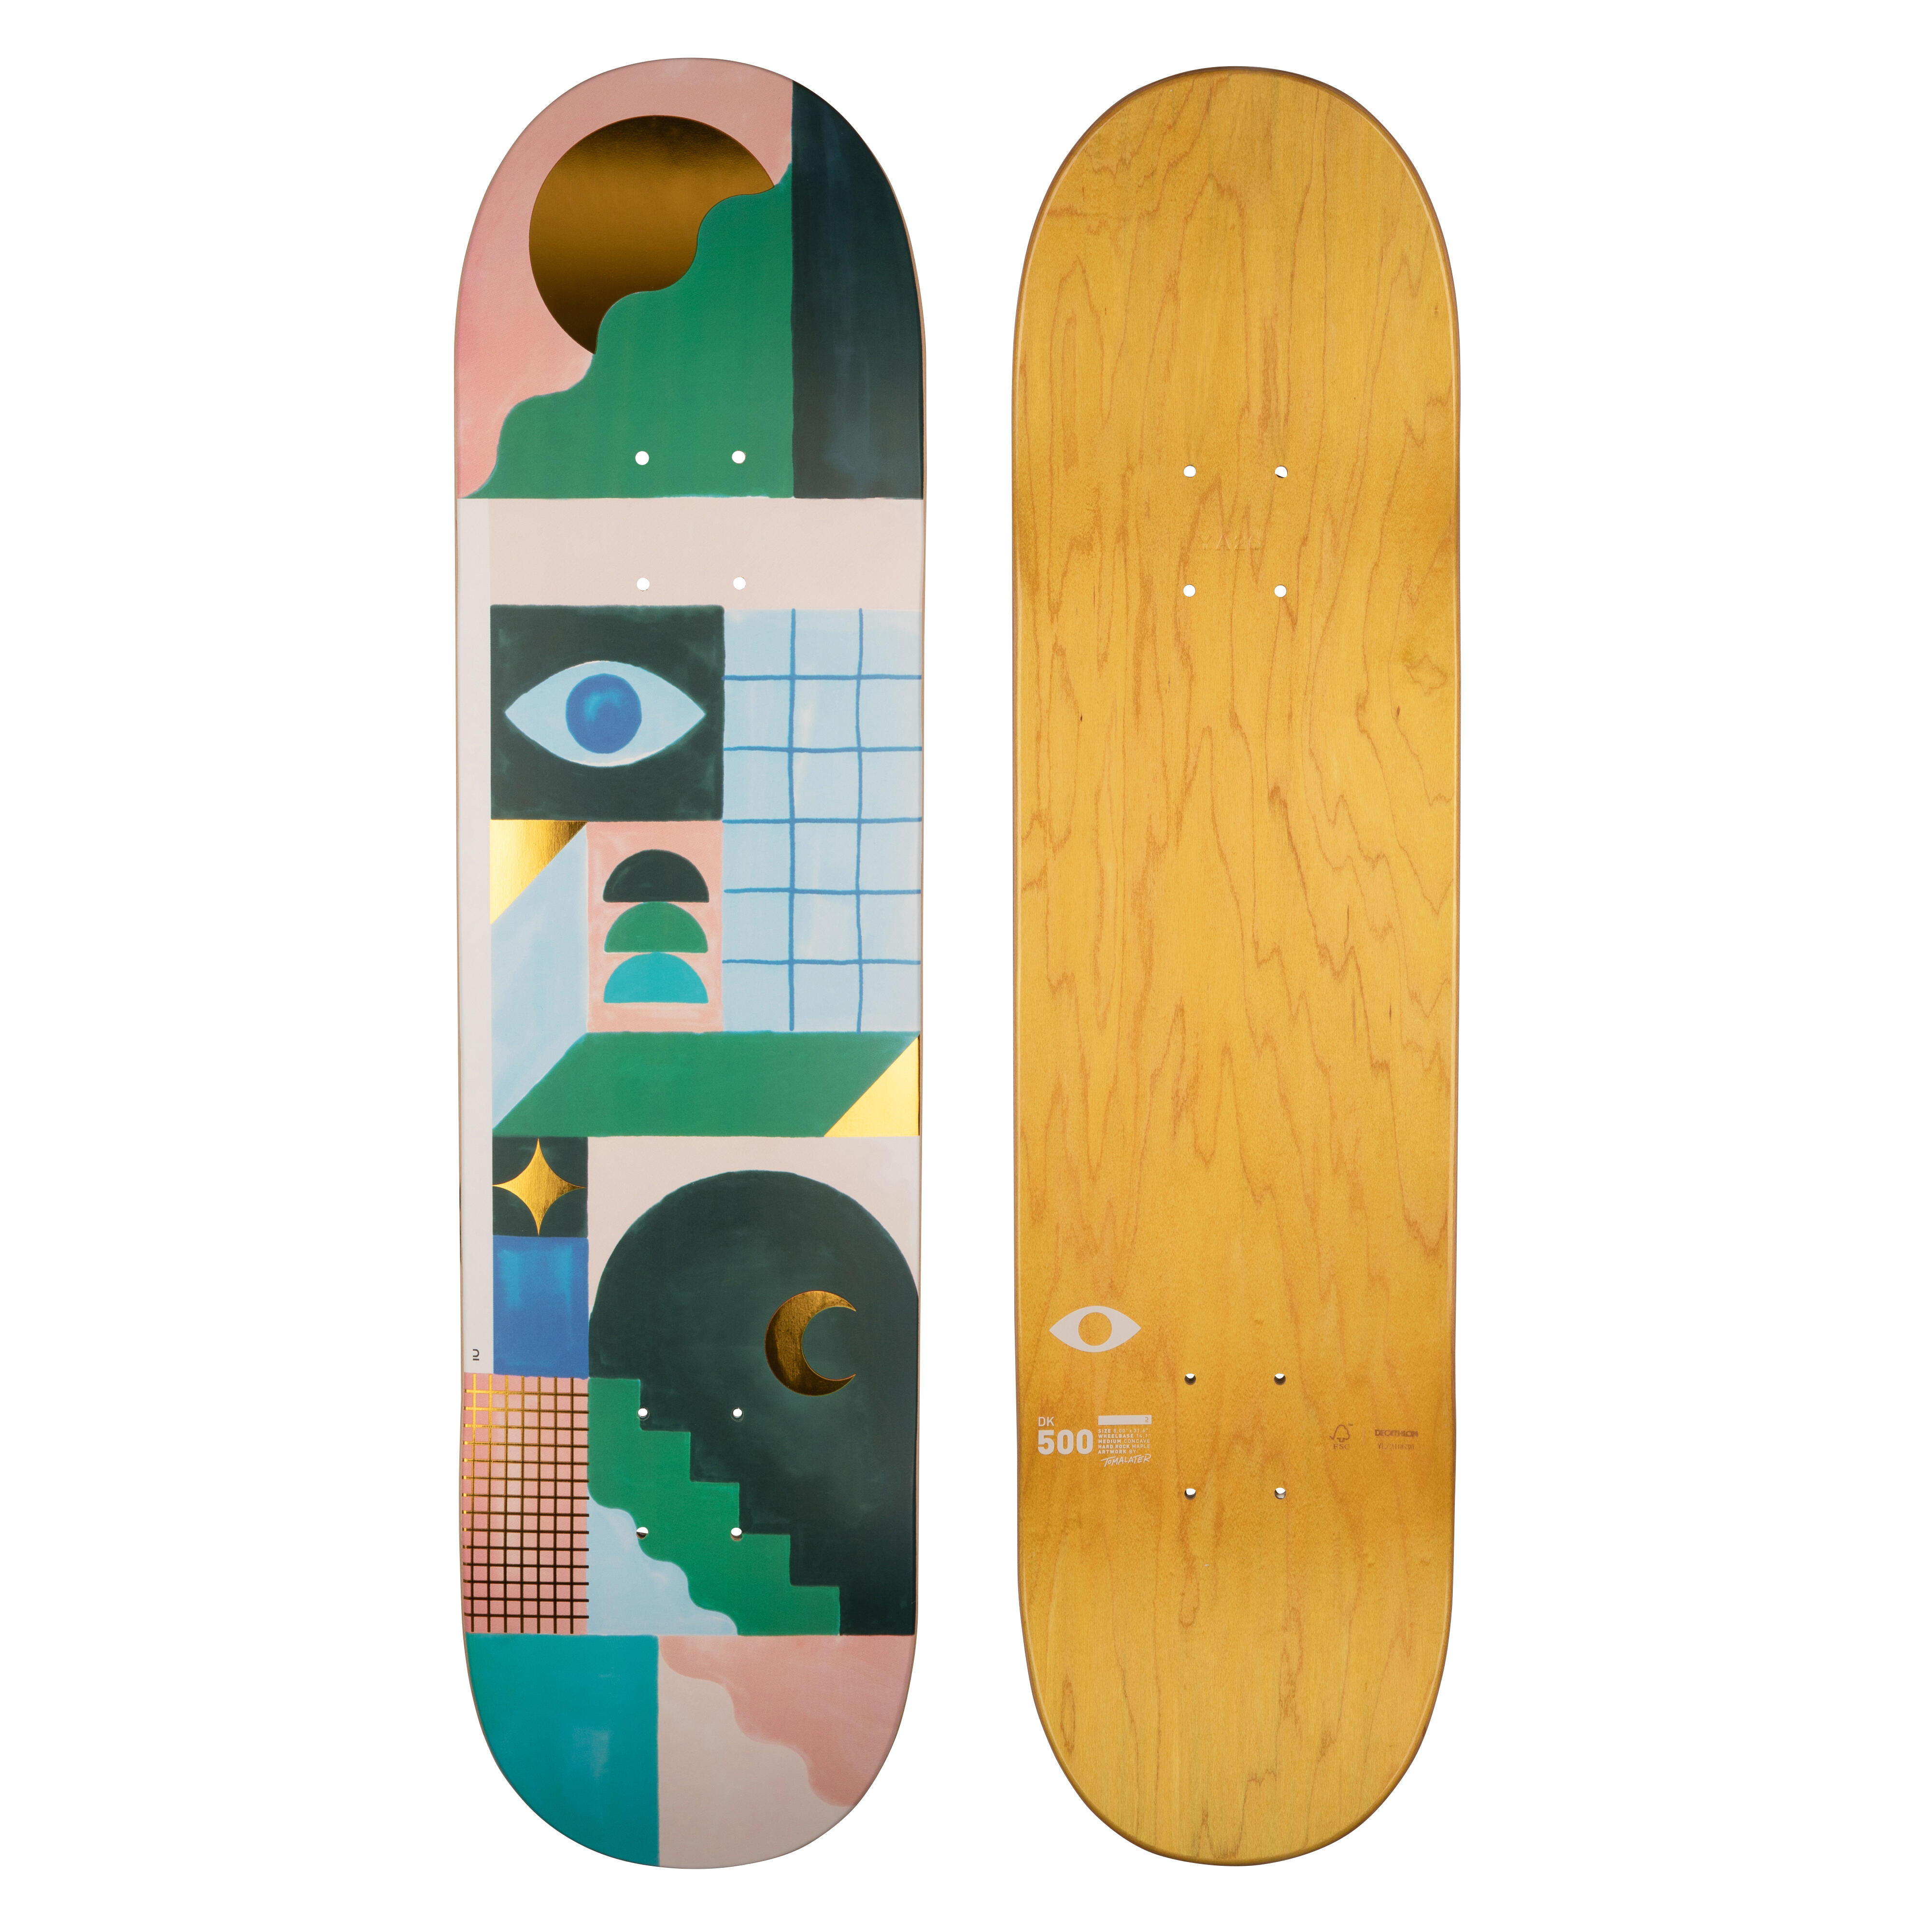 Placă skateboard DK500 Mărimea 8″Grafică de @TOMALATER